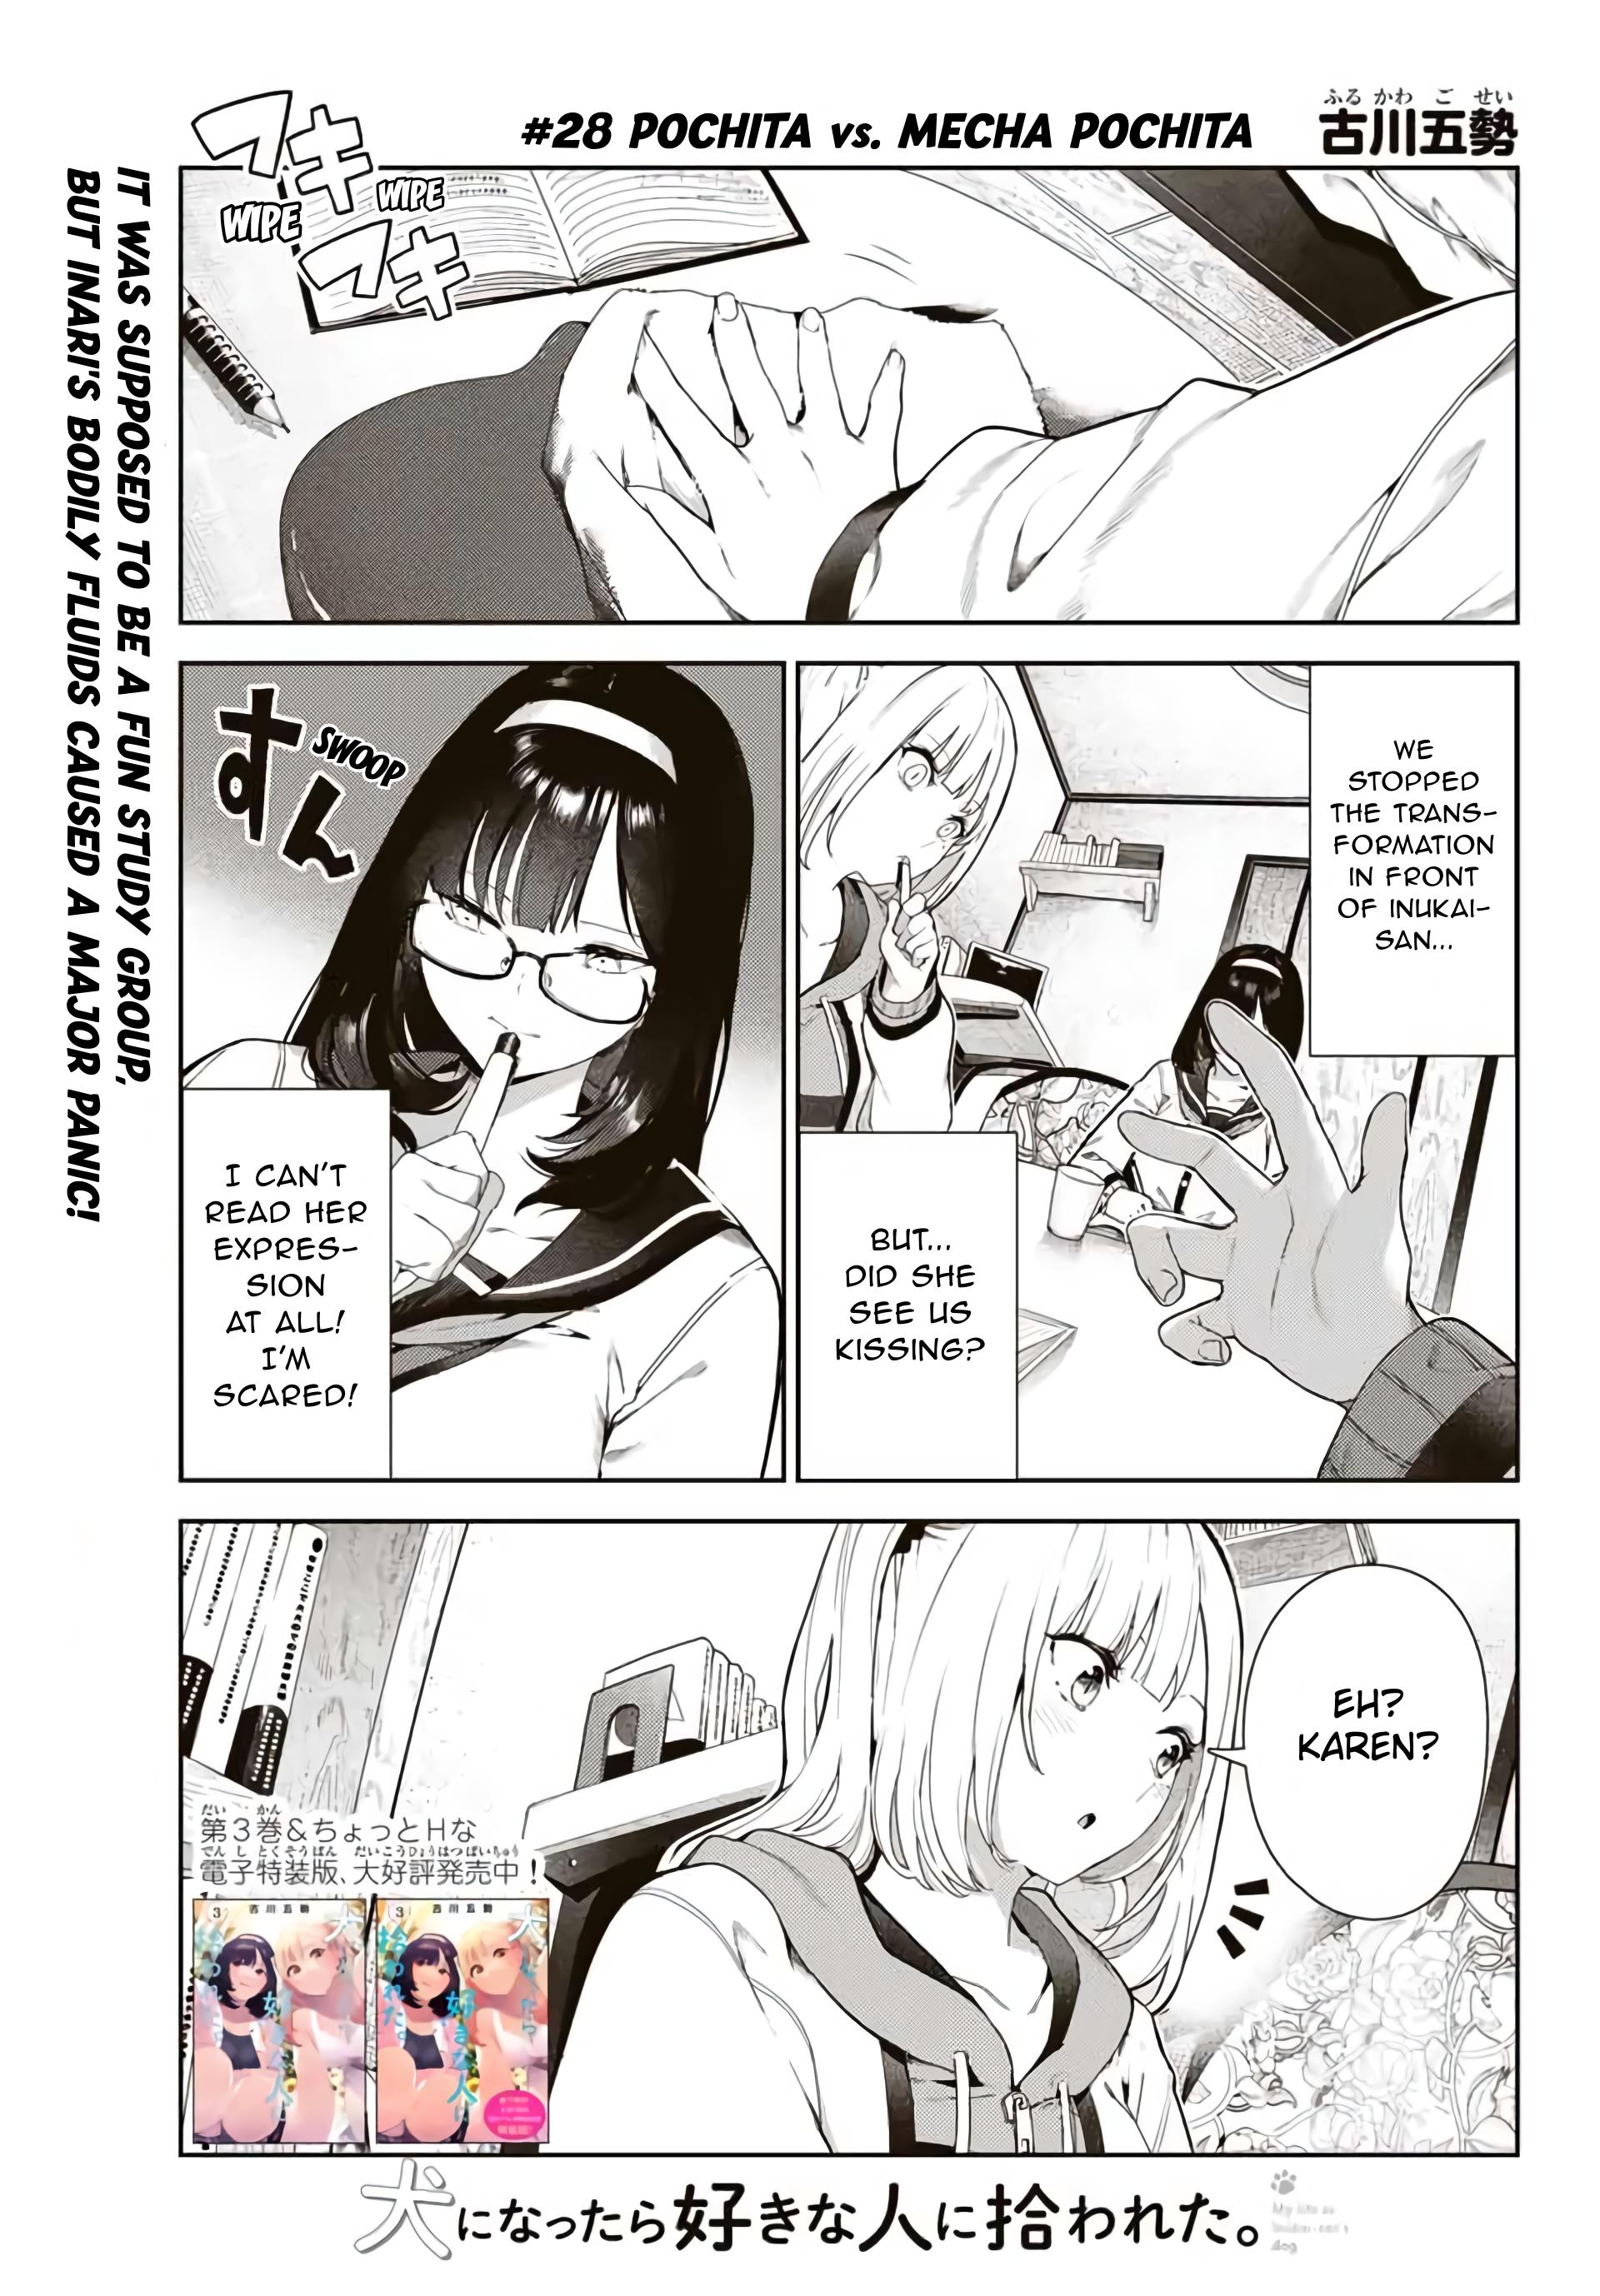 Inu ni Nattara Suki na Hito ni Hirowareta. Capítulo 52 - Manga Online